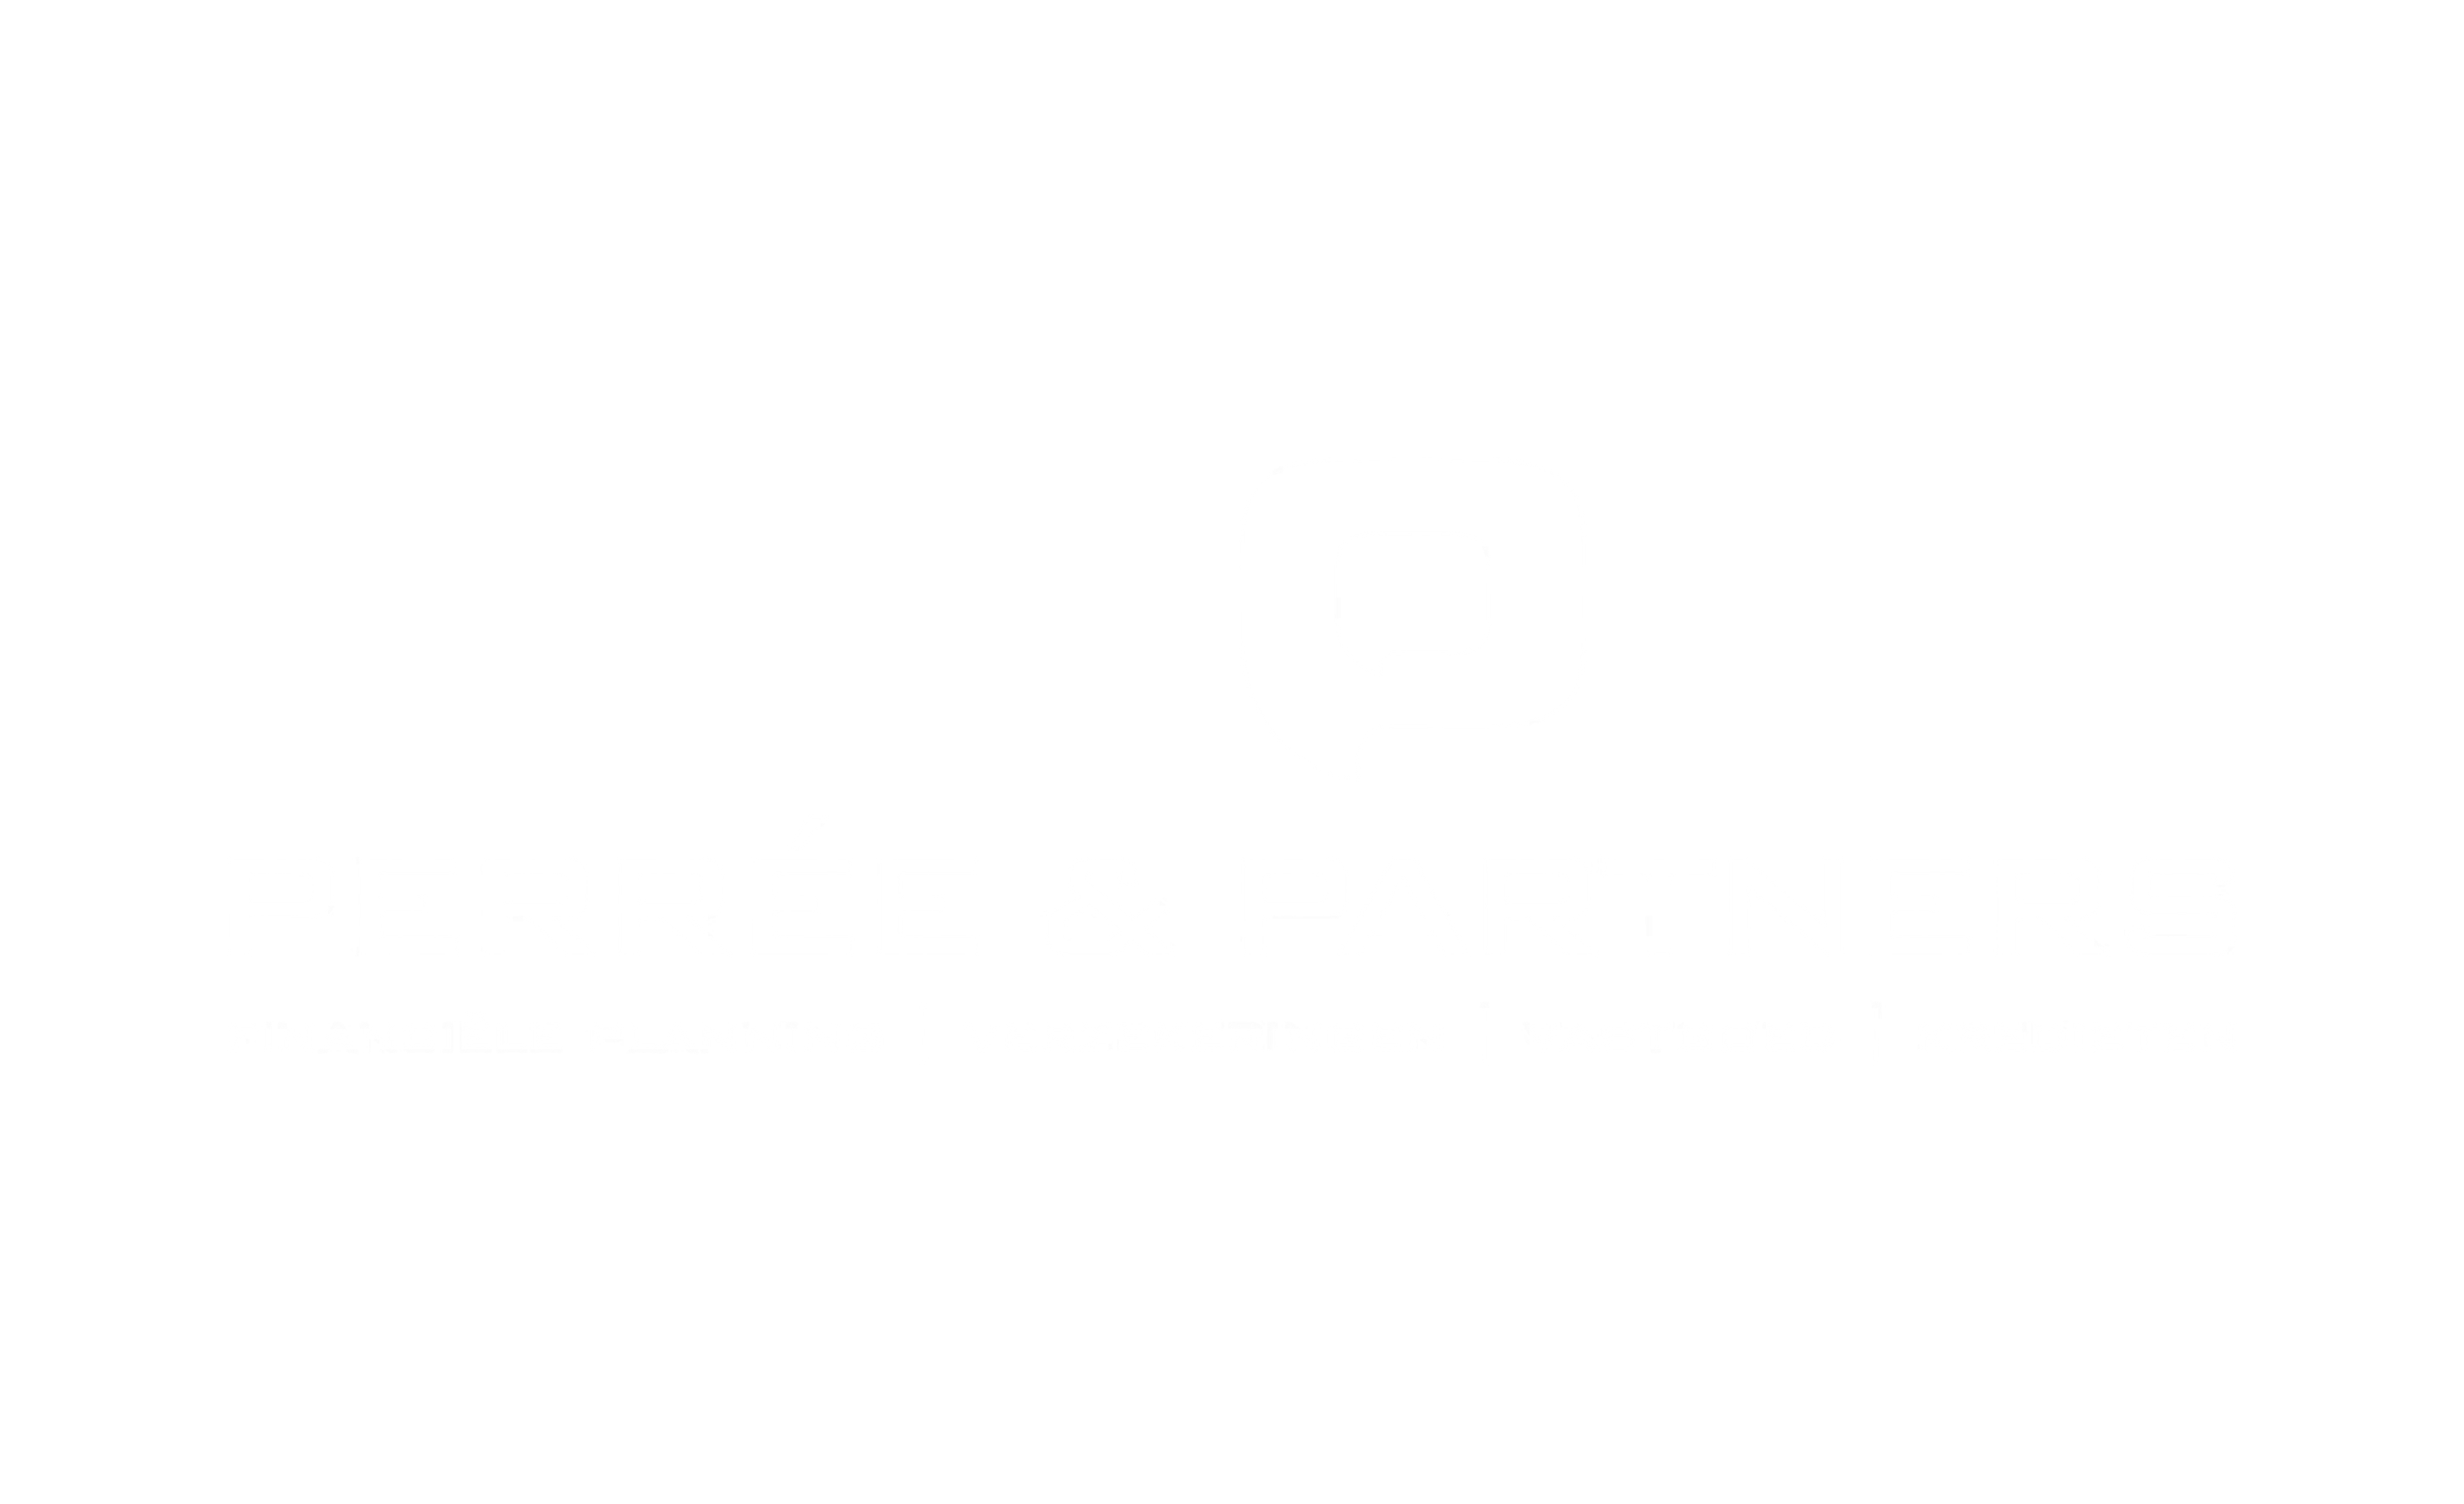 Perree & Partners verzekeren Logo